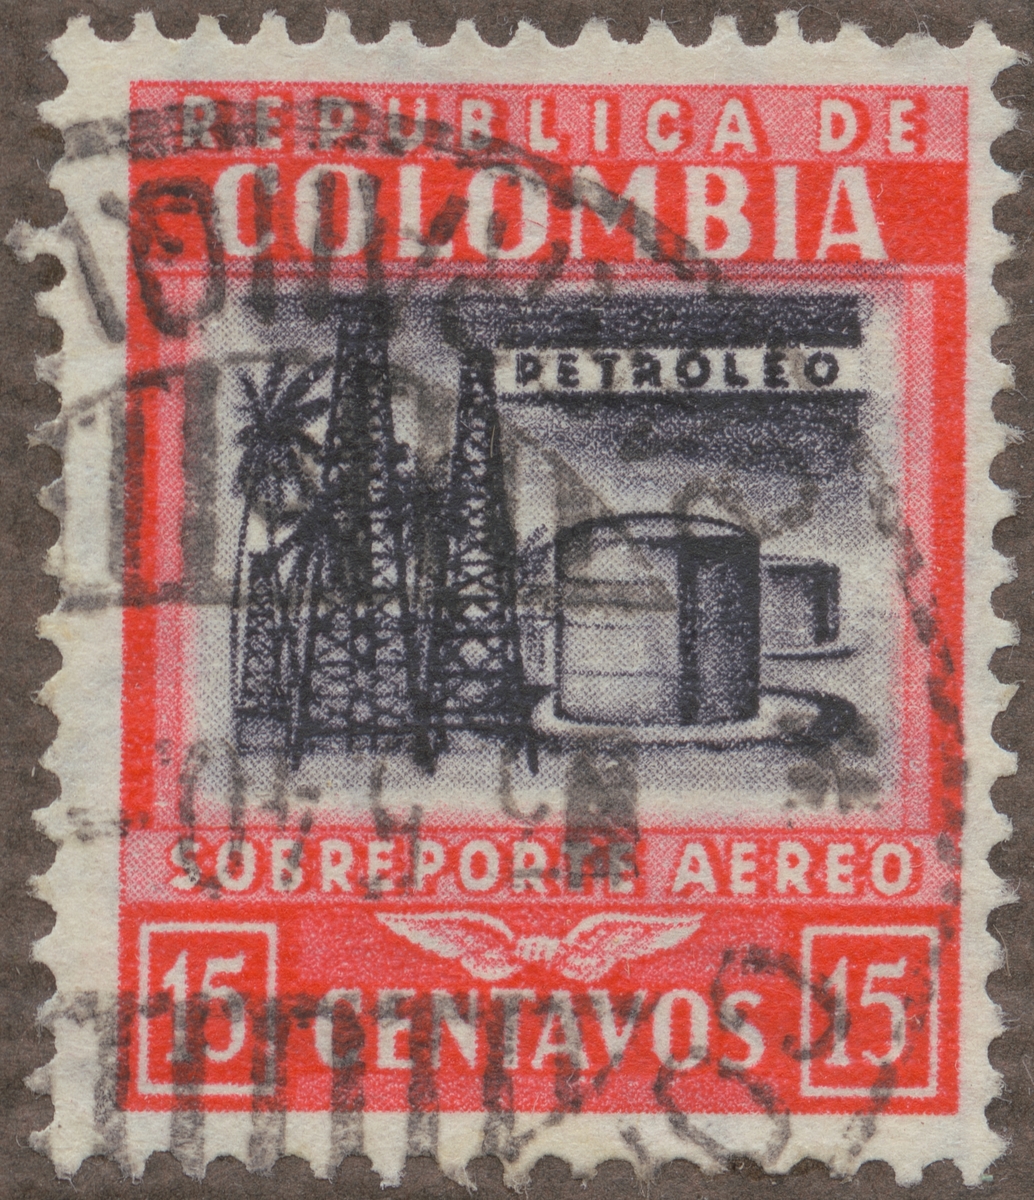 Frimärke ur Gösta Bodmans filatelistiska motivsamling, påbörjad 1950.
Frimärke från Colombia, 1939. Motiv av petroleumanläggning.